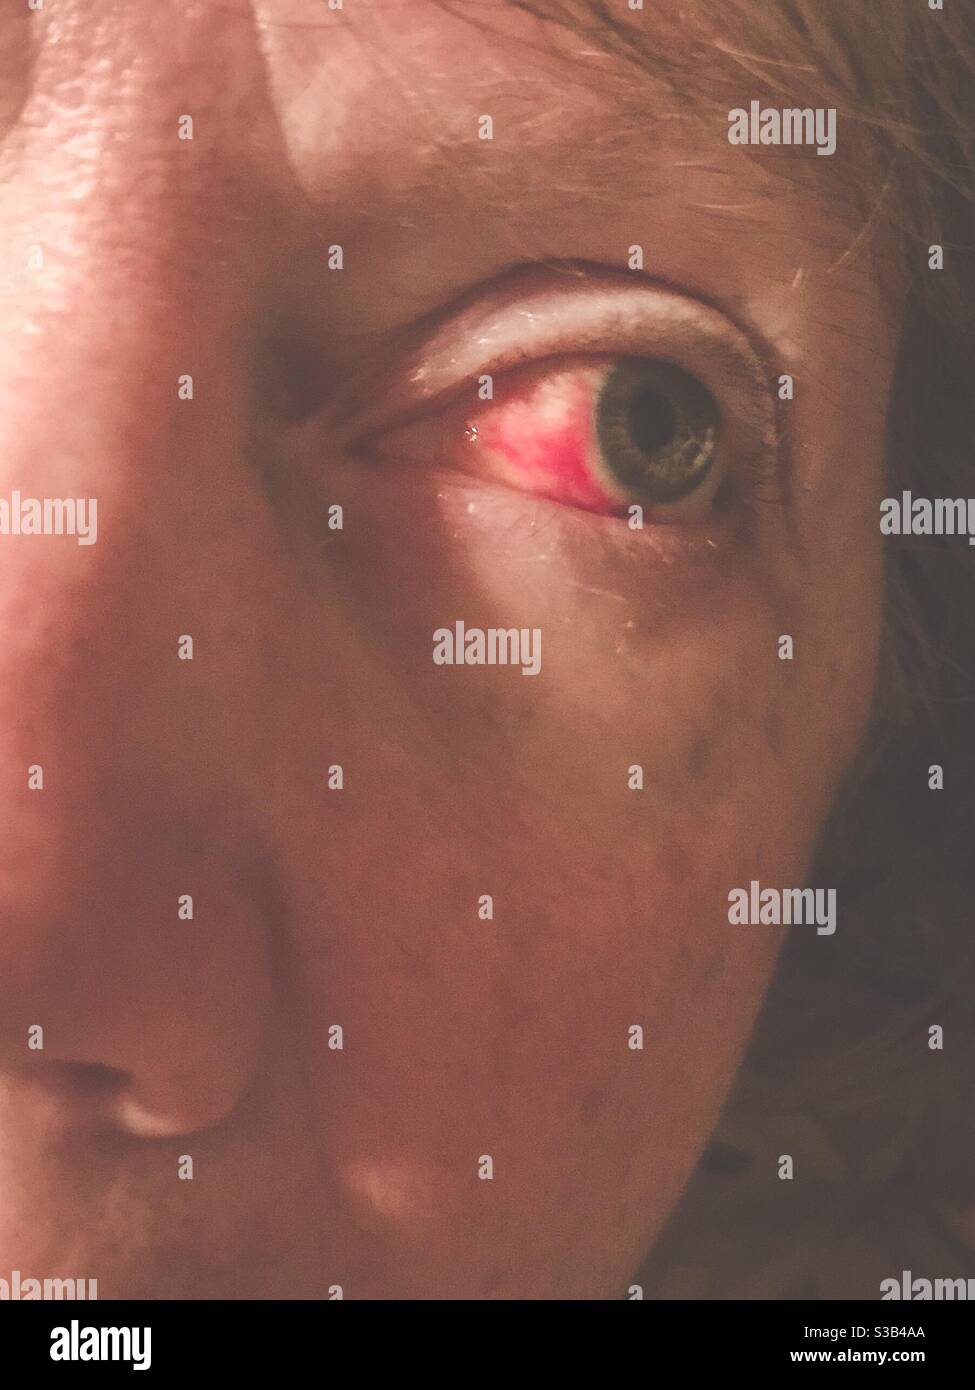 Vaisseau sanguin cassé dans l'œil de la femme d'âge moyen Banque D'Images